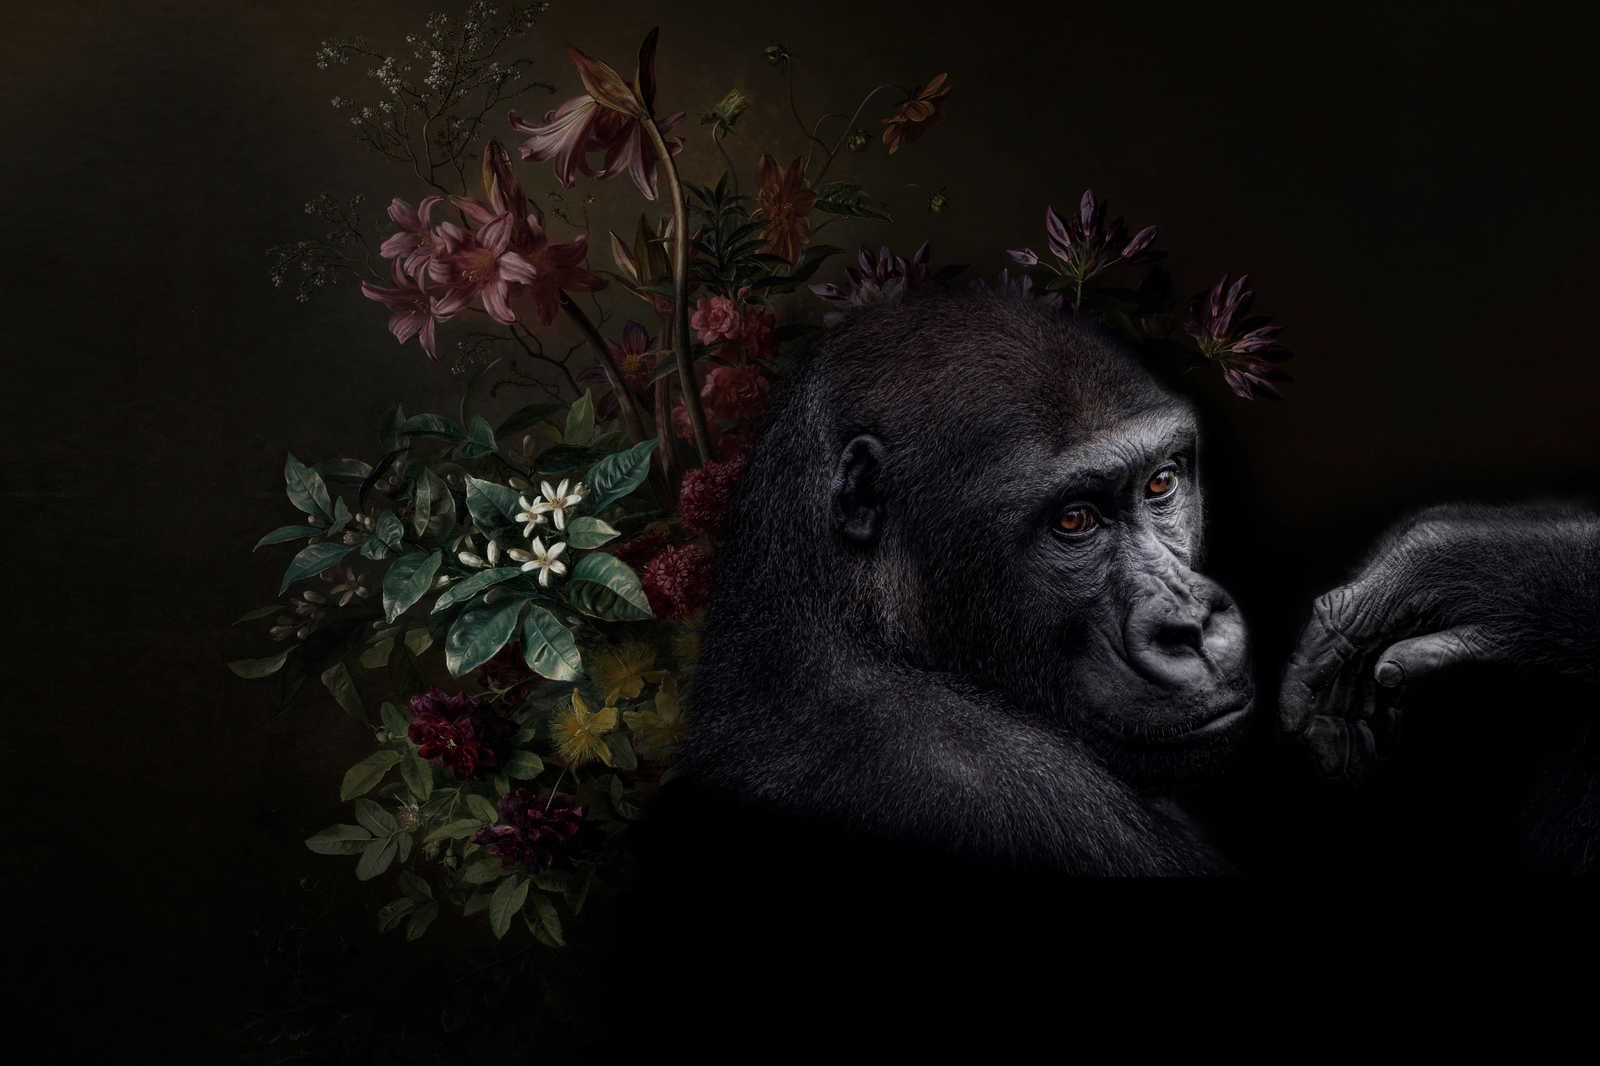             Canvas painting Gorilla Portrait with flowers - 0,90 m x 0,60 m
        